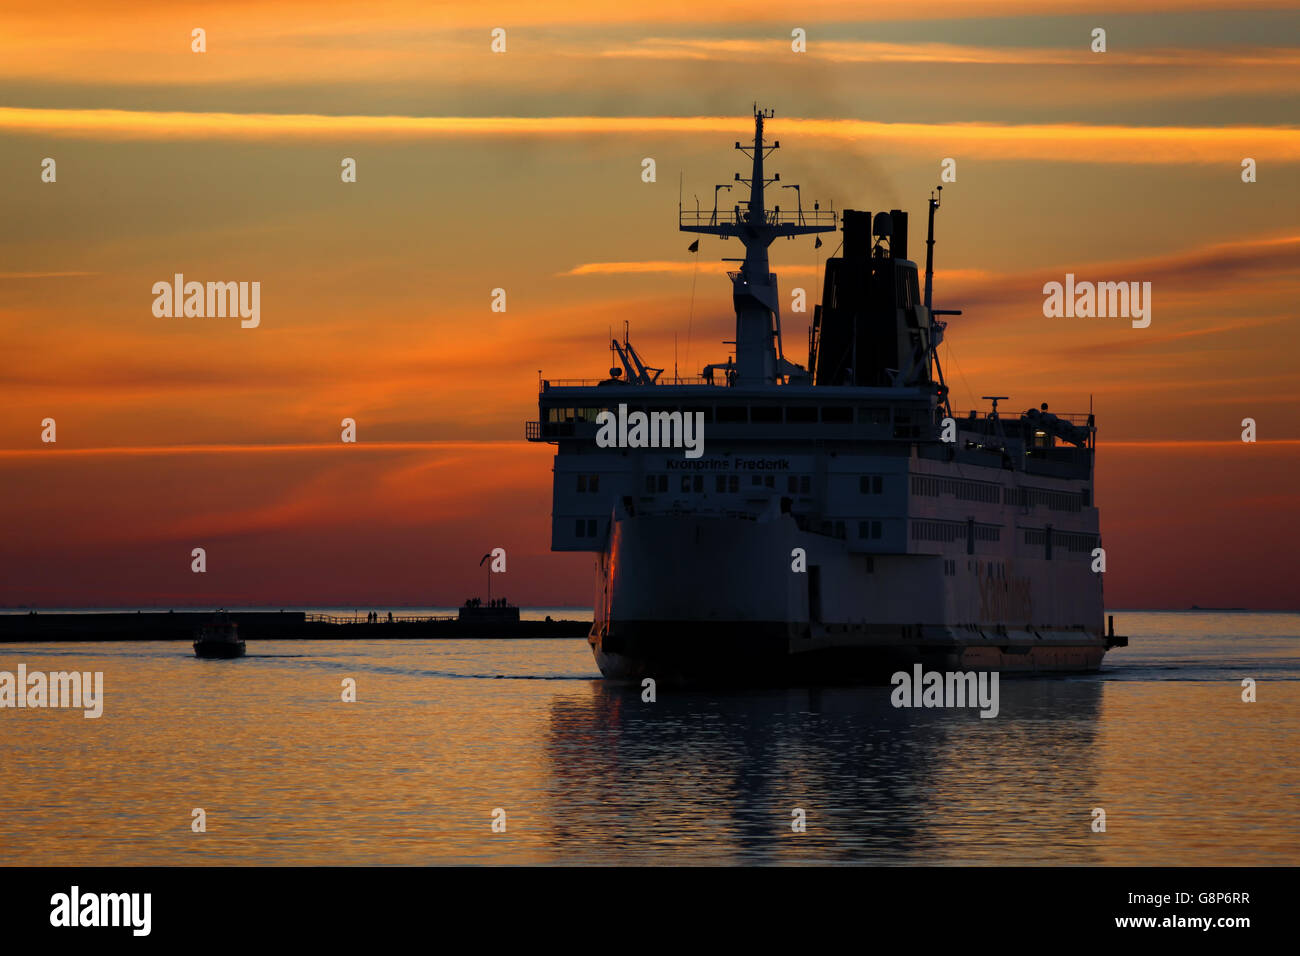 Il traghetto roro 'Kronprins Frederik' in arrivo nel porto di Rostock, Germania durante il tramonto. Foto Stock